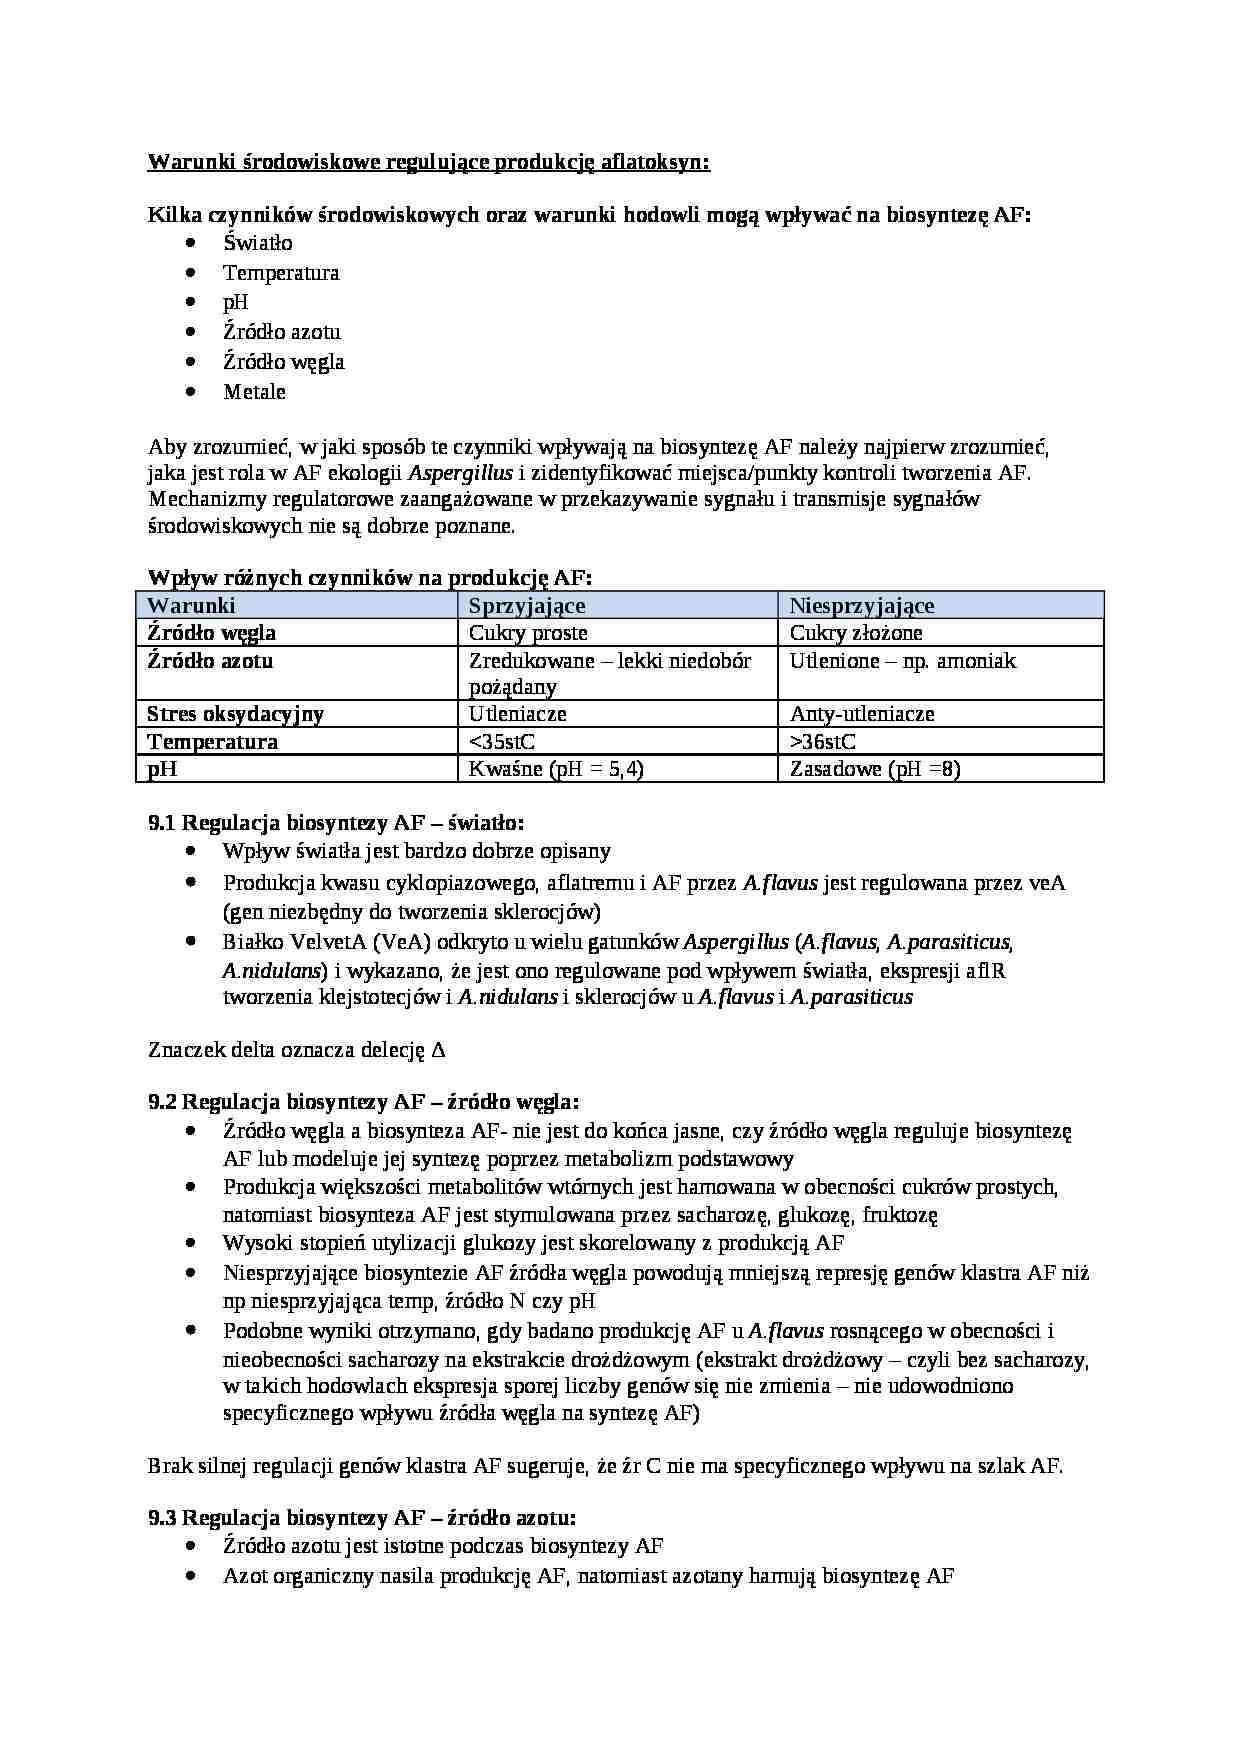 Genetyka grzybów, Warunki środowiskowe regulujące produkcję aflatoksyn - omówienie - strona 1